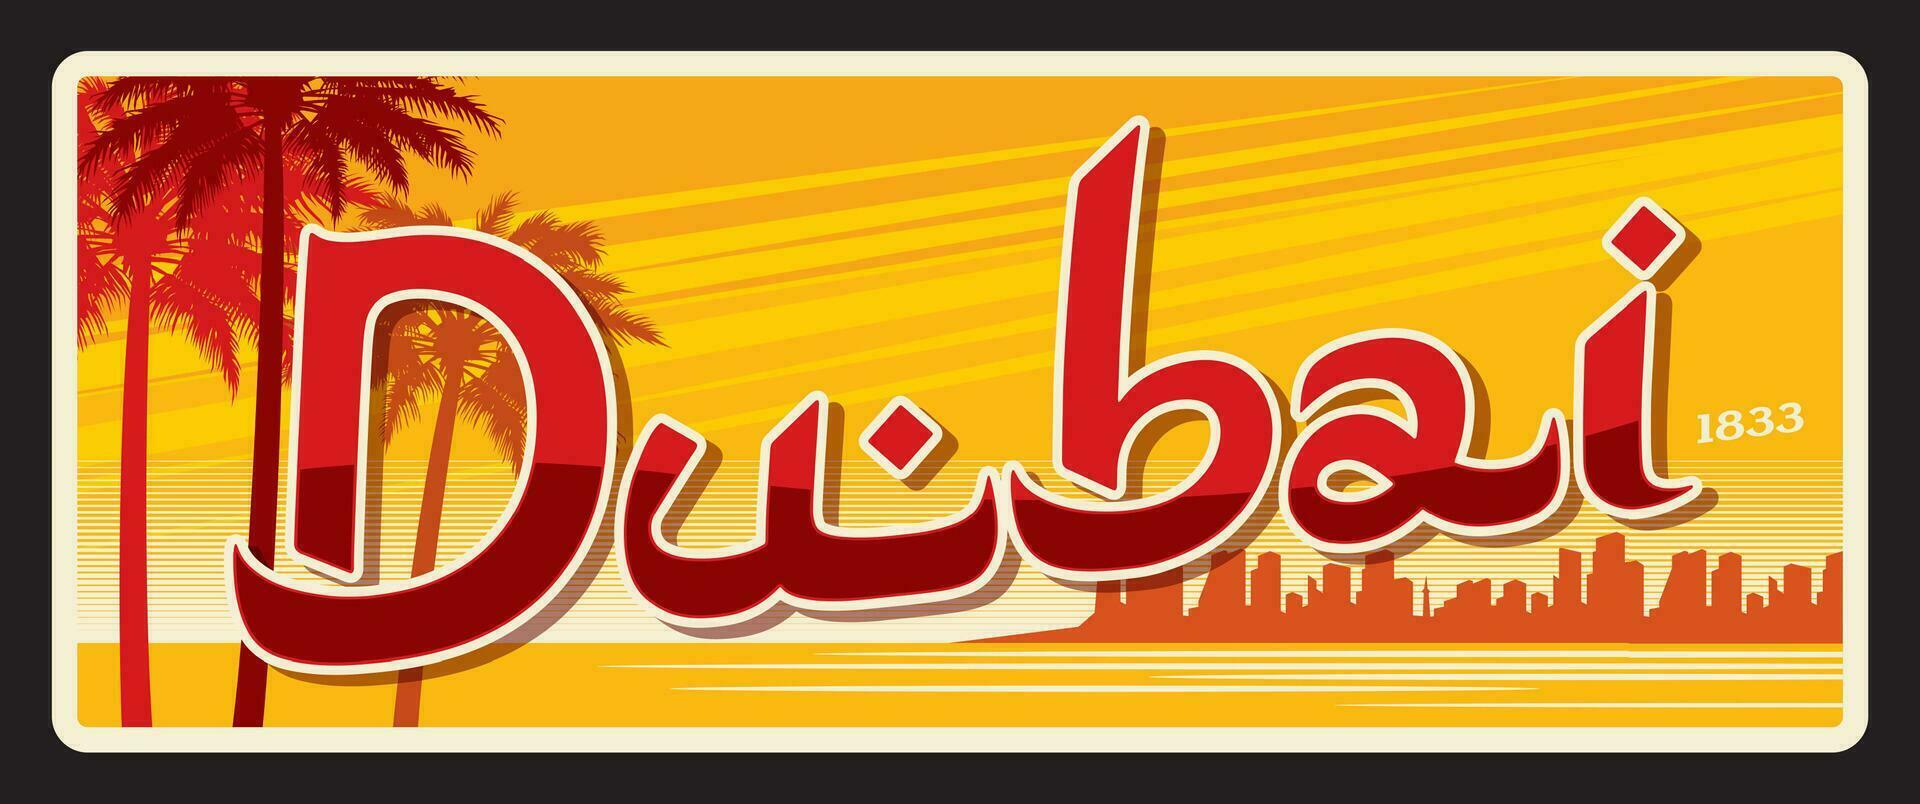 Dubai Stadt Reise Aufkleber oder Plakette vektor